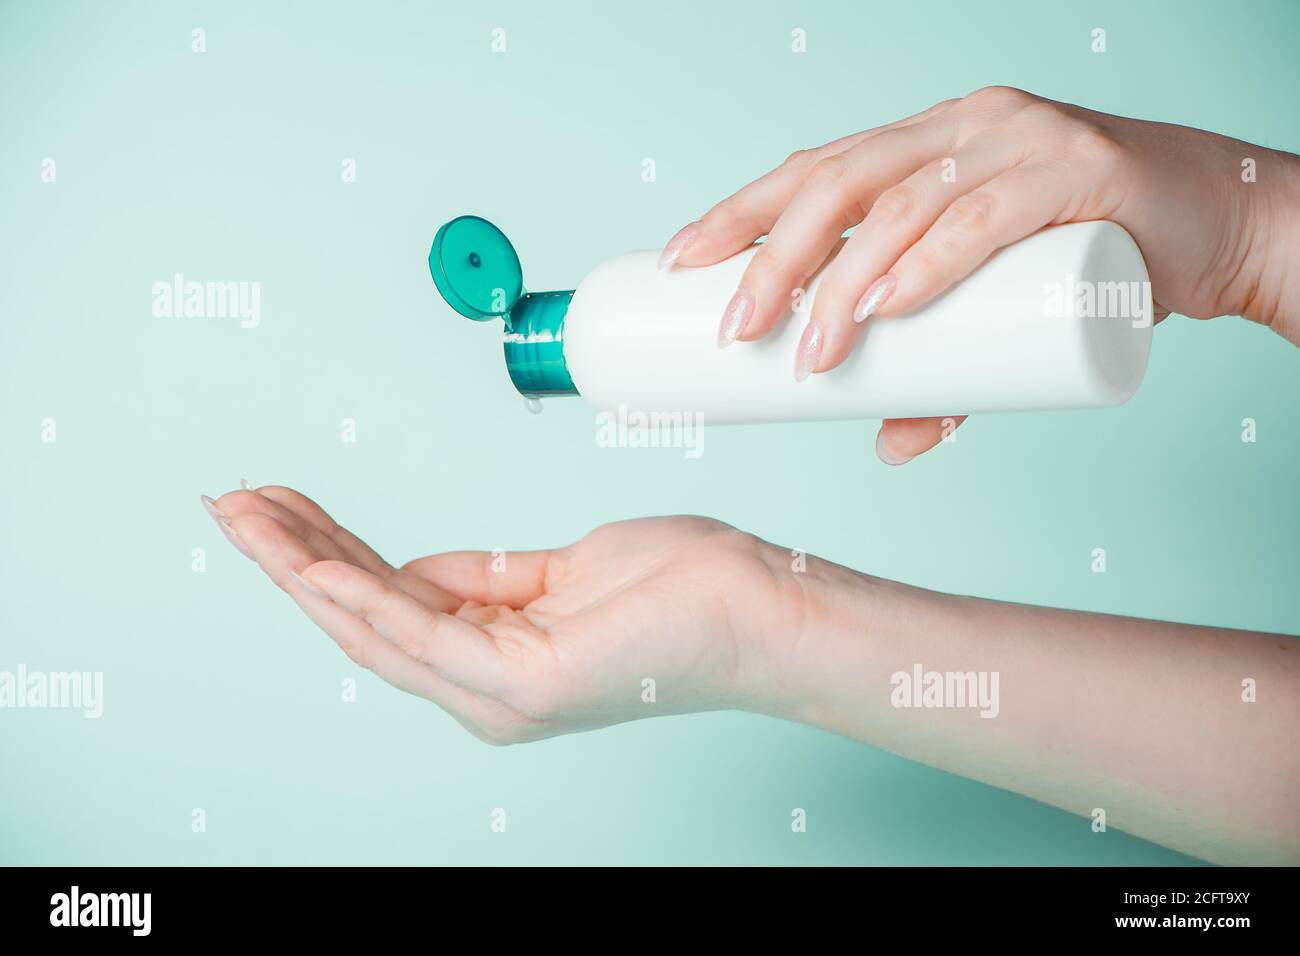 Une jeune femme utilise du gel antibactérien pour désinfecter ses mains. Le concept d'hygiène et de prévention du coronavirus. Banque D'Images